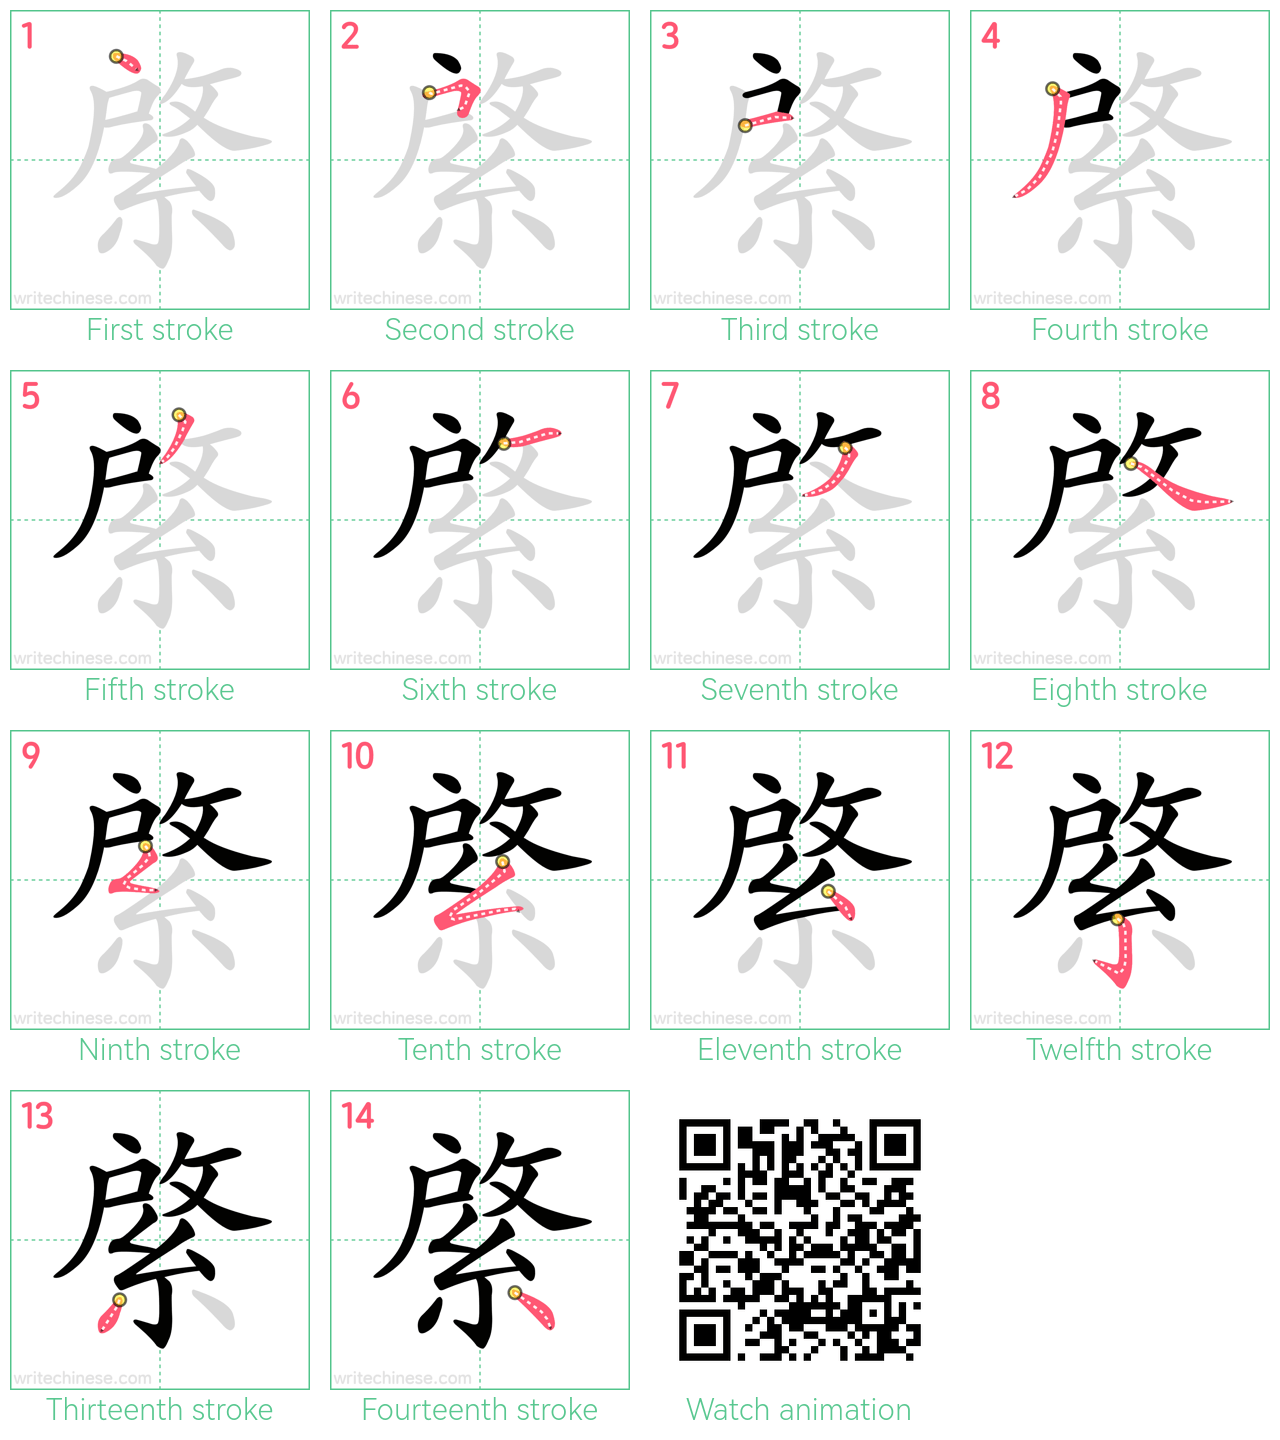 綮 step-by-step stroke order diagrams